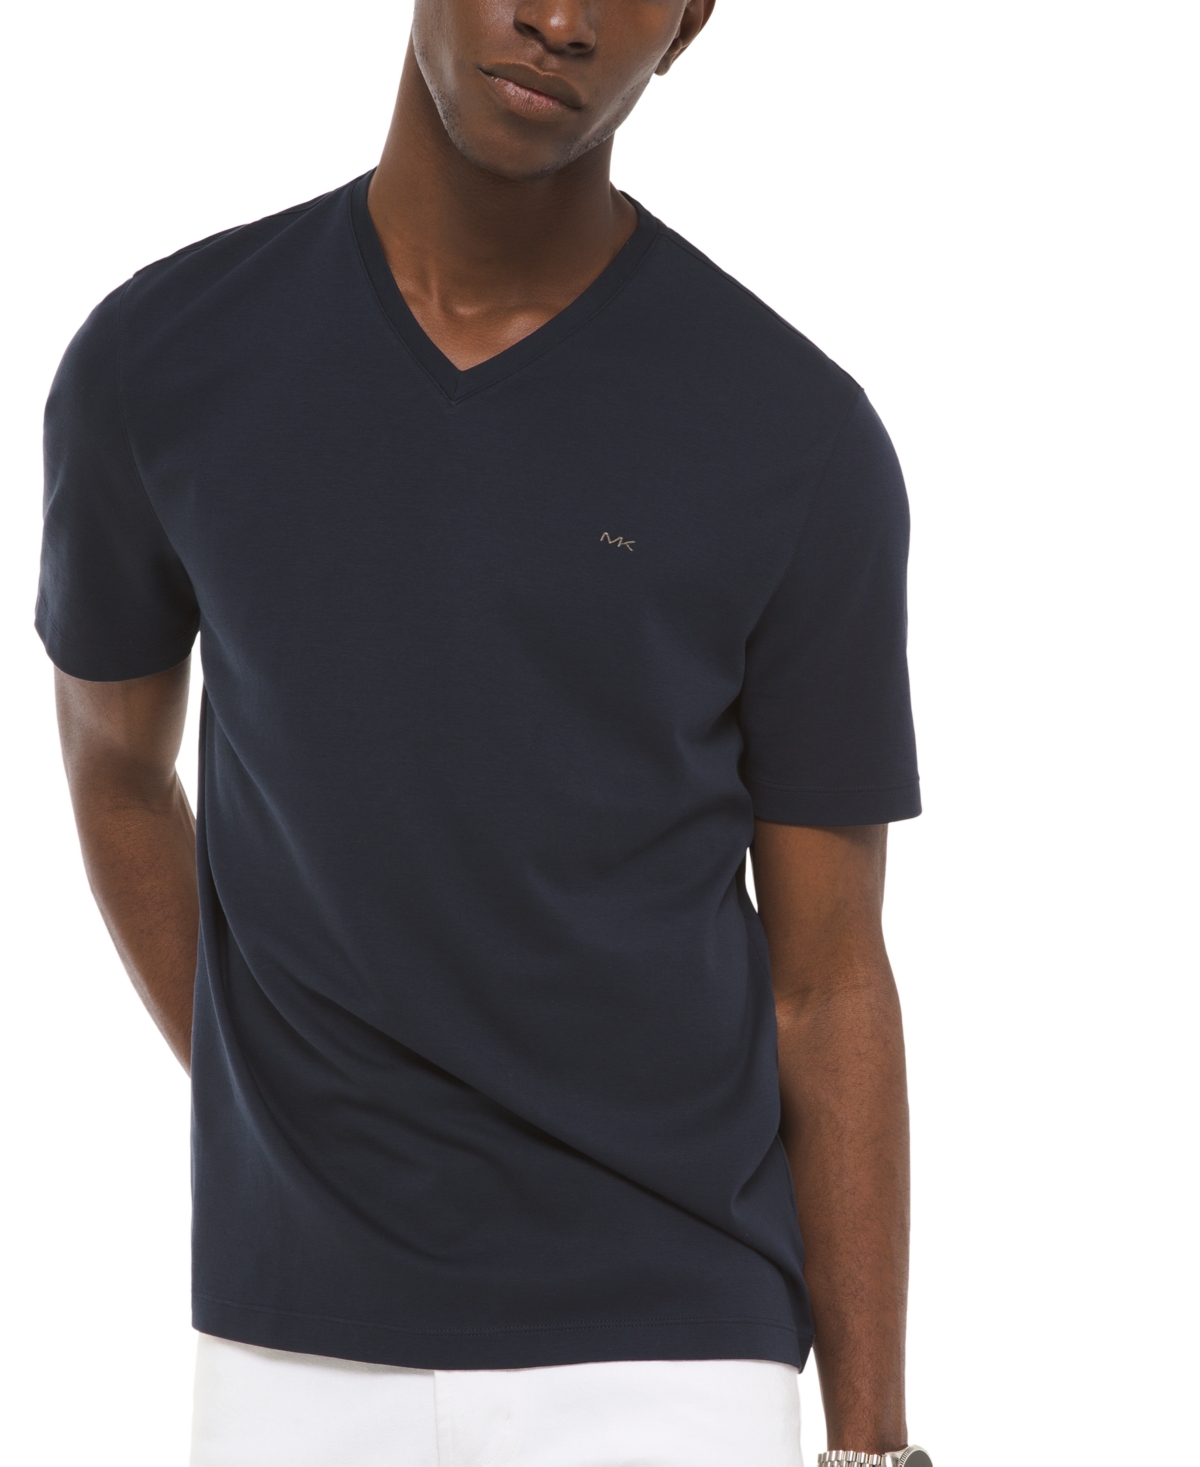 Men's V-Neck Liquid Cotton T-Shirt - Midnight